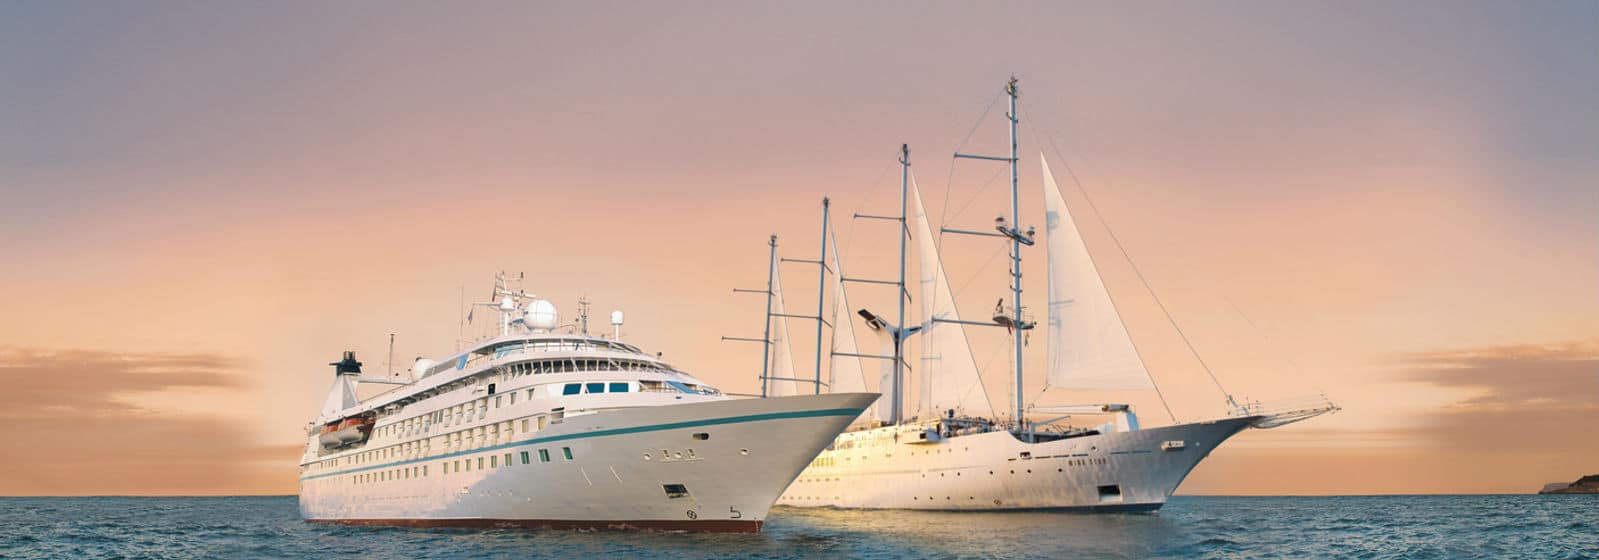 windstar-cruises-ships